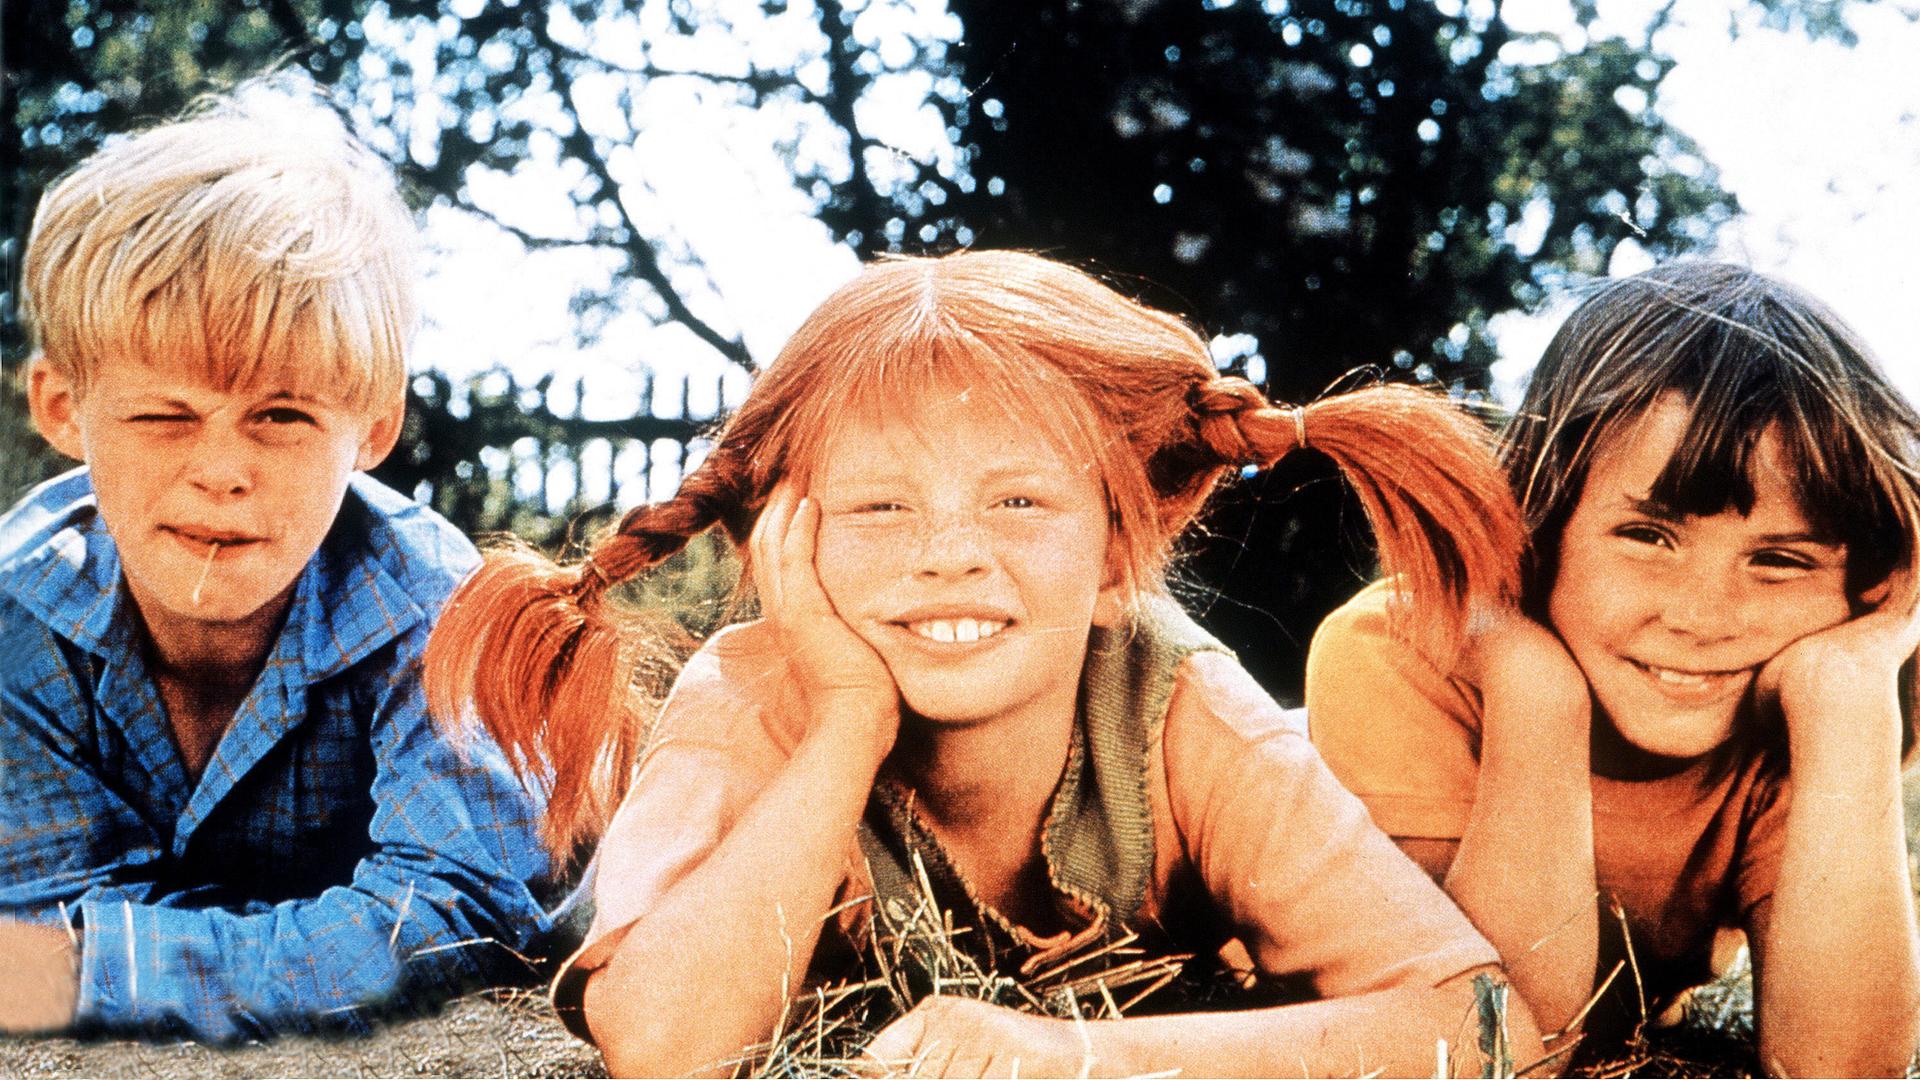 Filmszene aus Astrid Lindgrens "Pippi Langstrumpf": Pippi, ein rothaariges, sommersprossiges und eigenwilliges Mädchen, hat die tollsten Ideen. Die Geschwister Tommy und Annika schließen schnell Freundschaft mit ihr. 